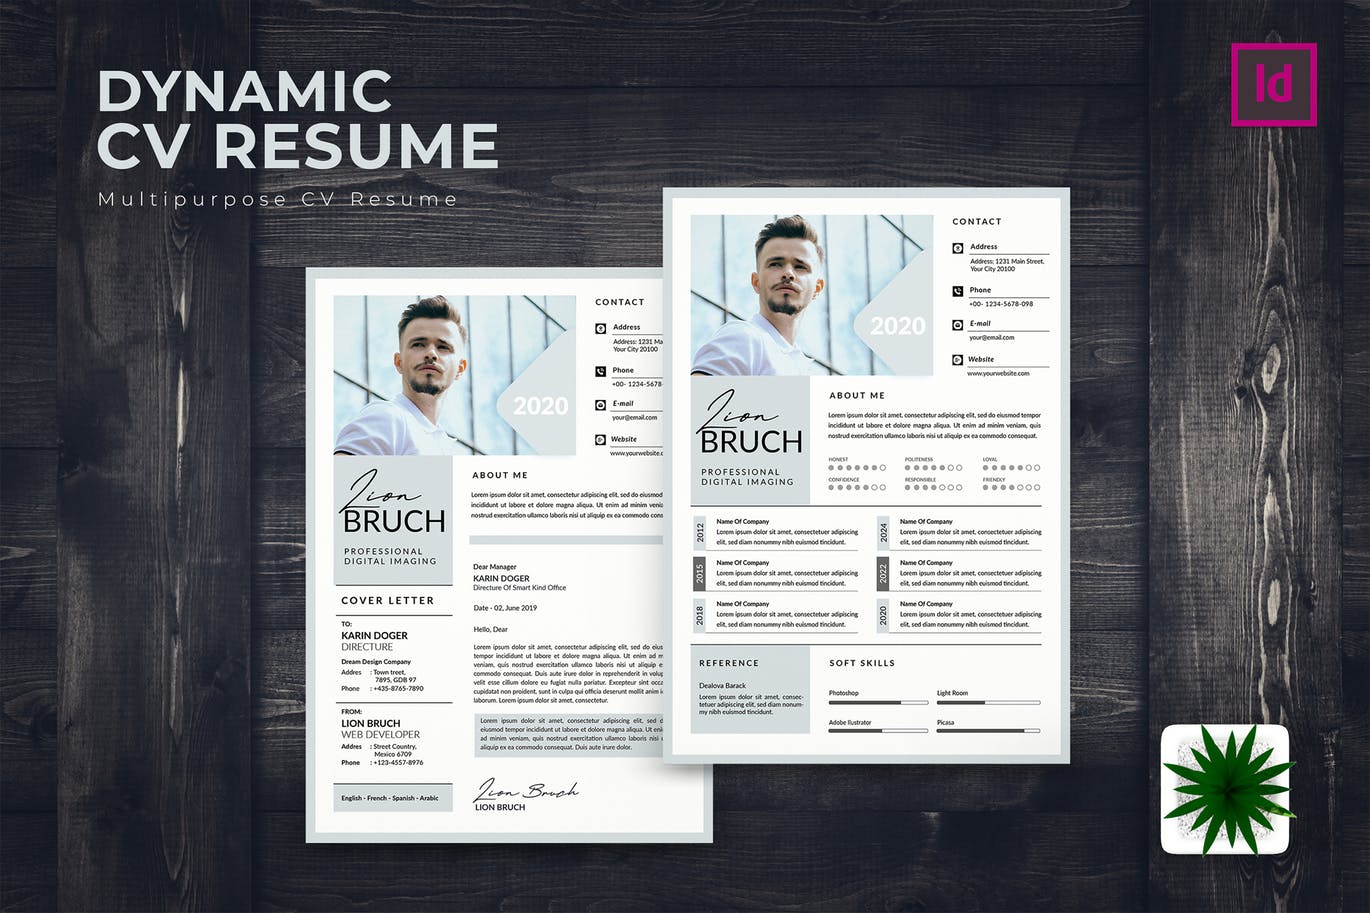 专业图形设计师电子第一素材精选简历模板 Dynamic CV Resume插图